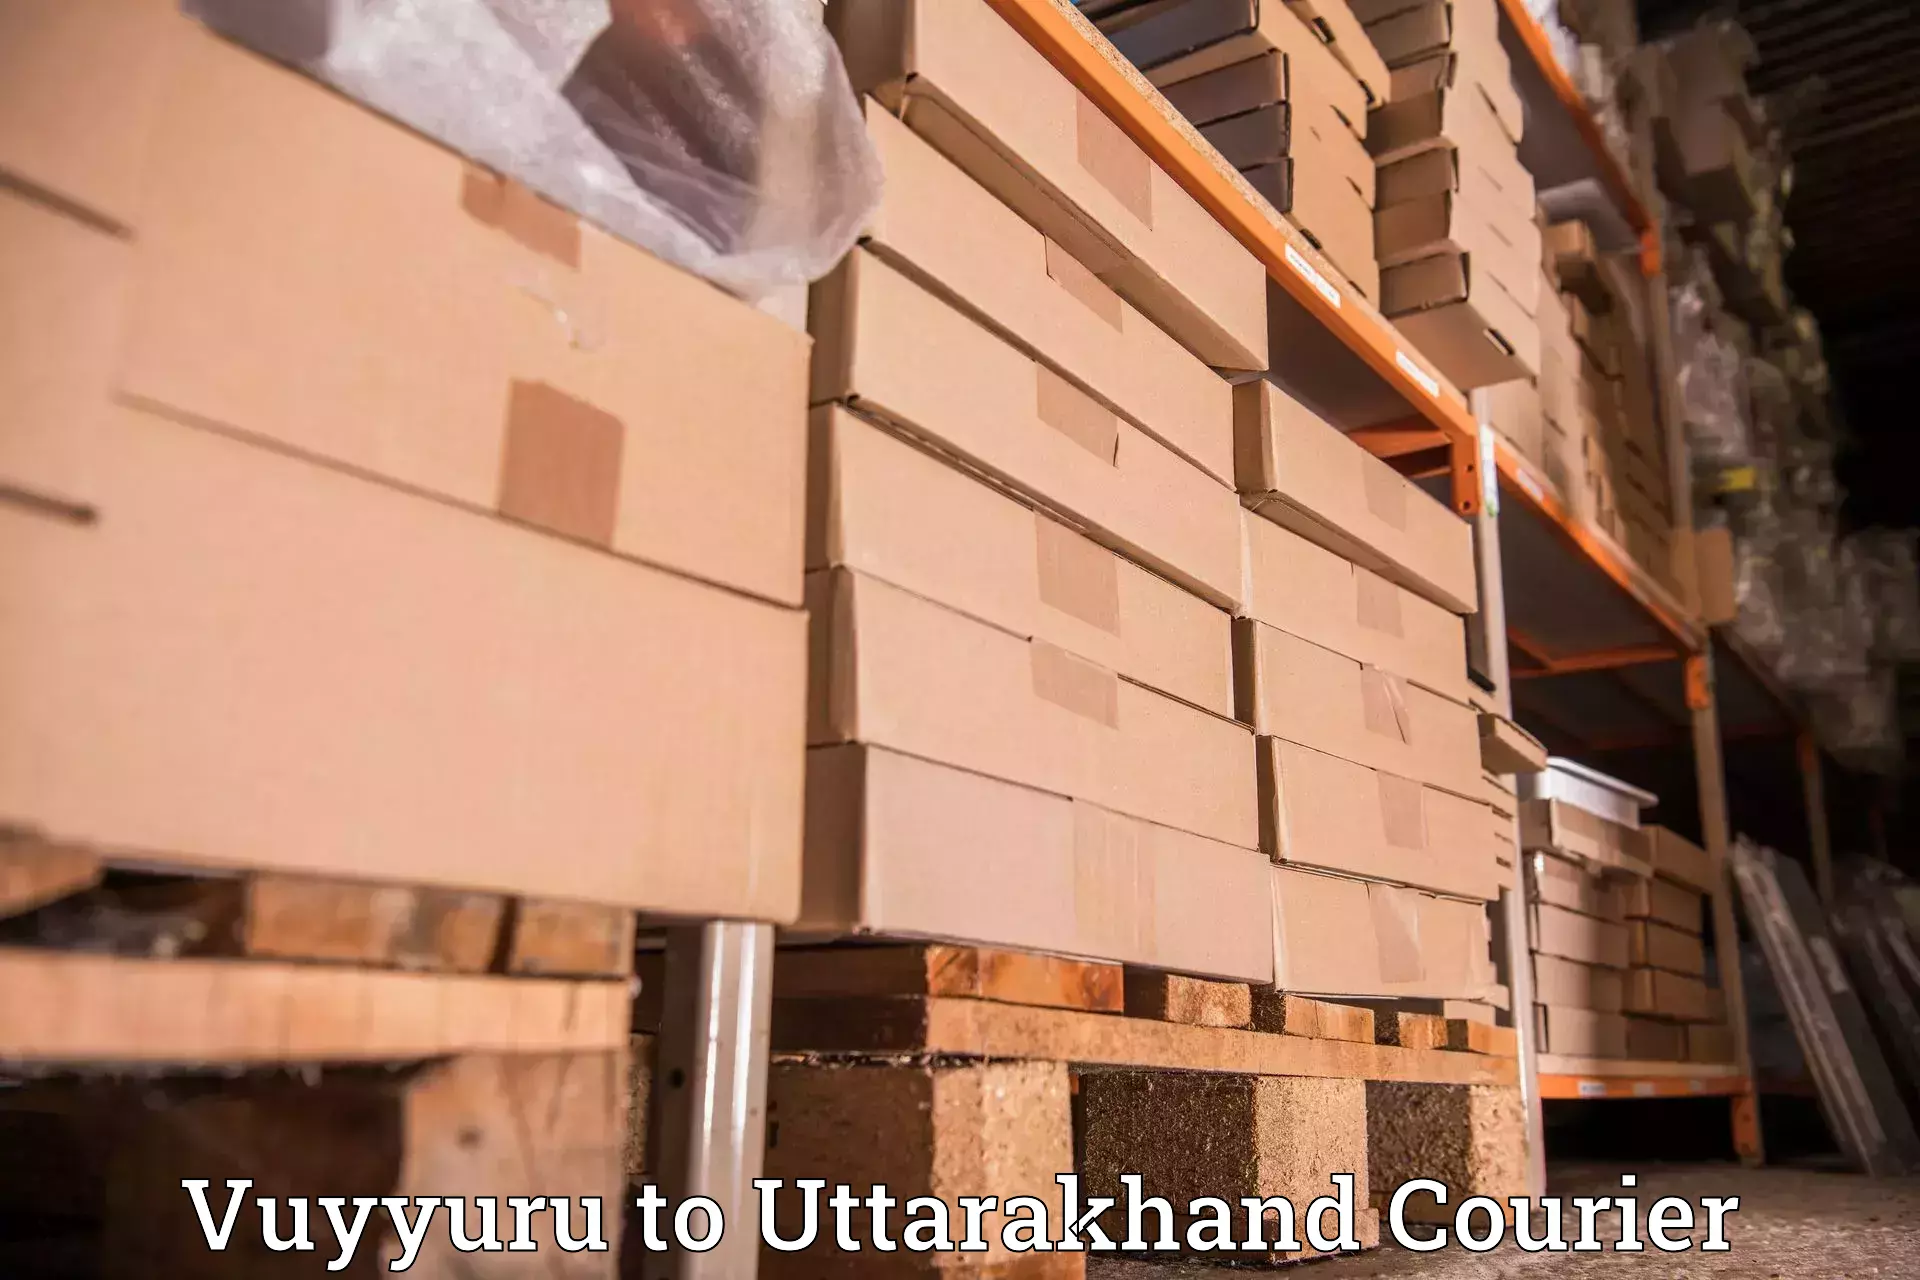 International parcel service Vuyyuru to Chamoli